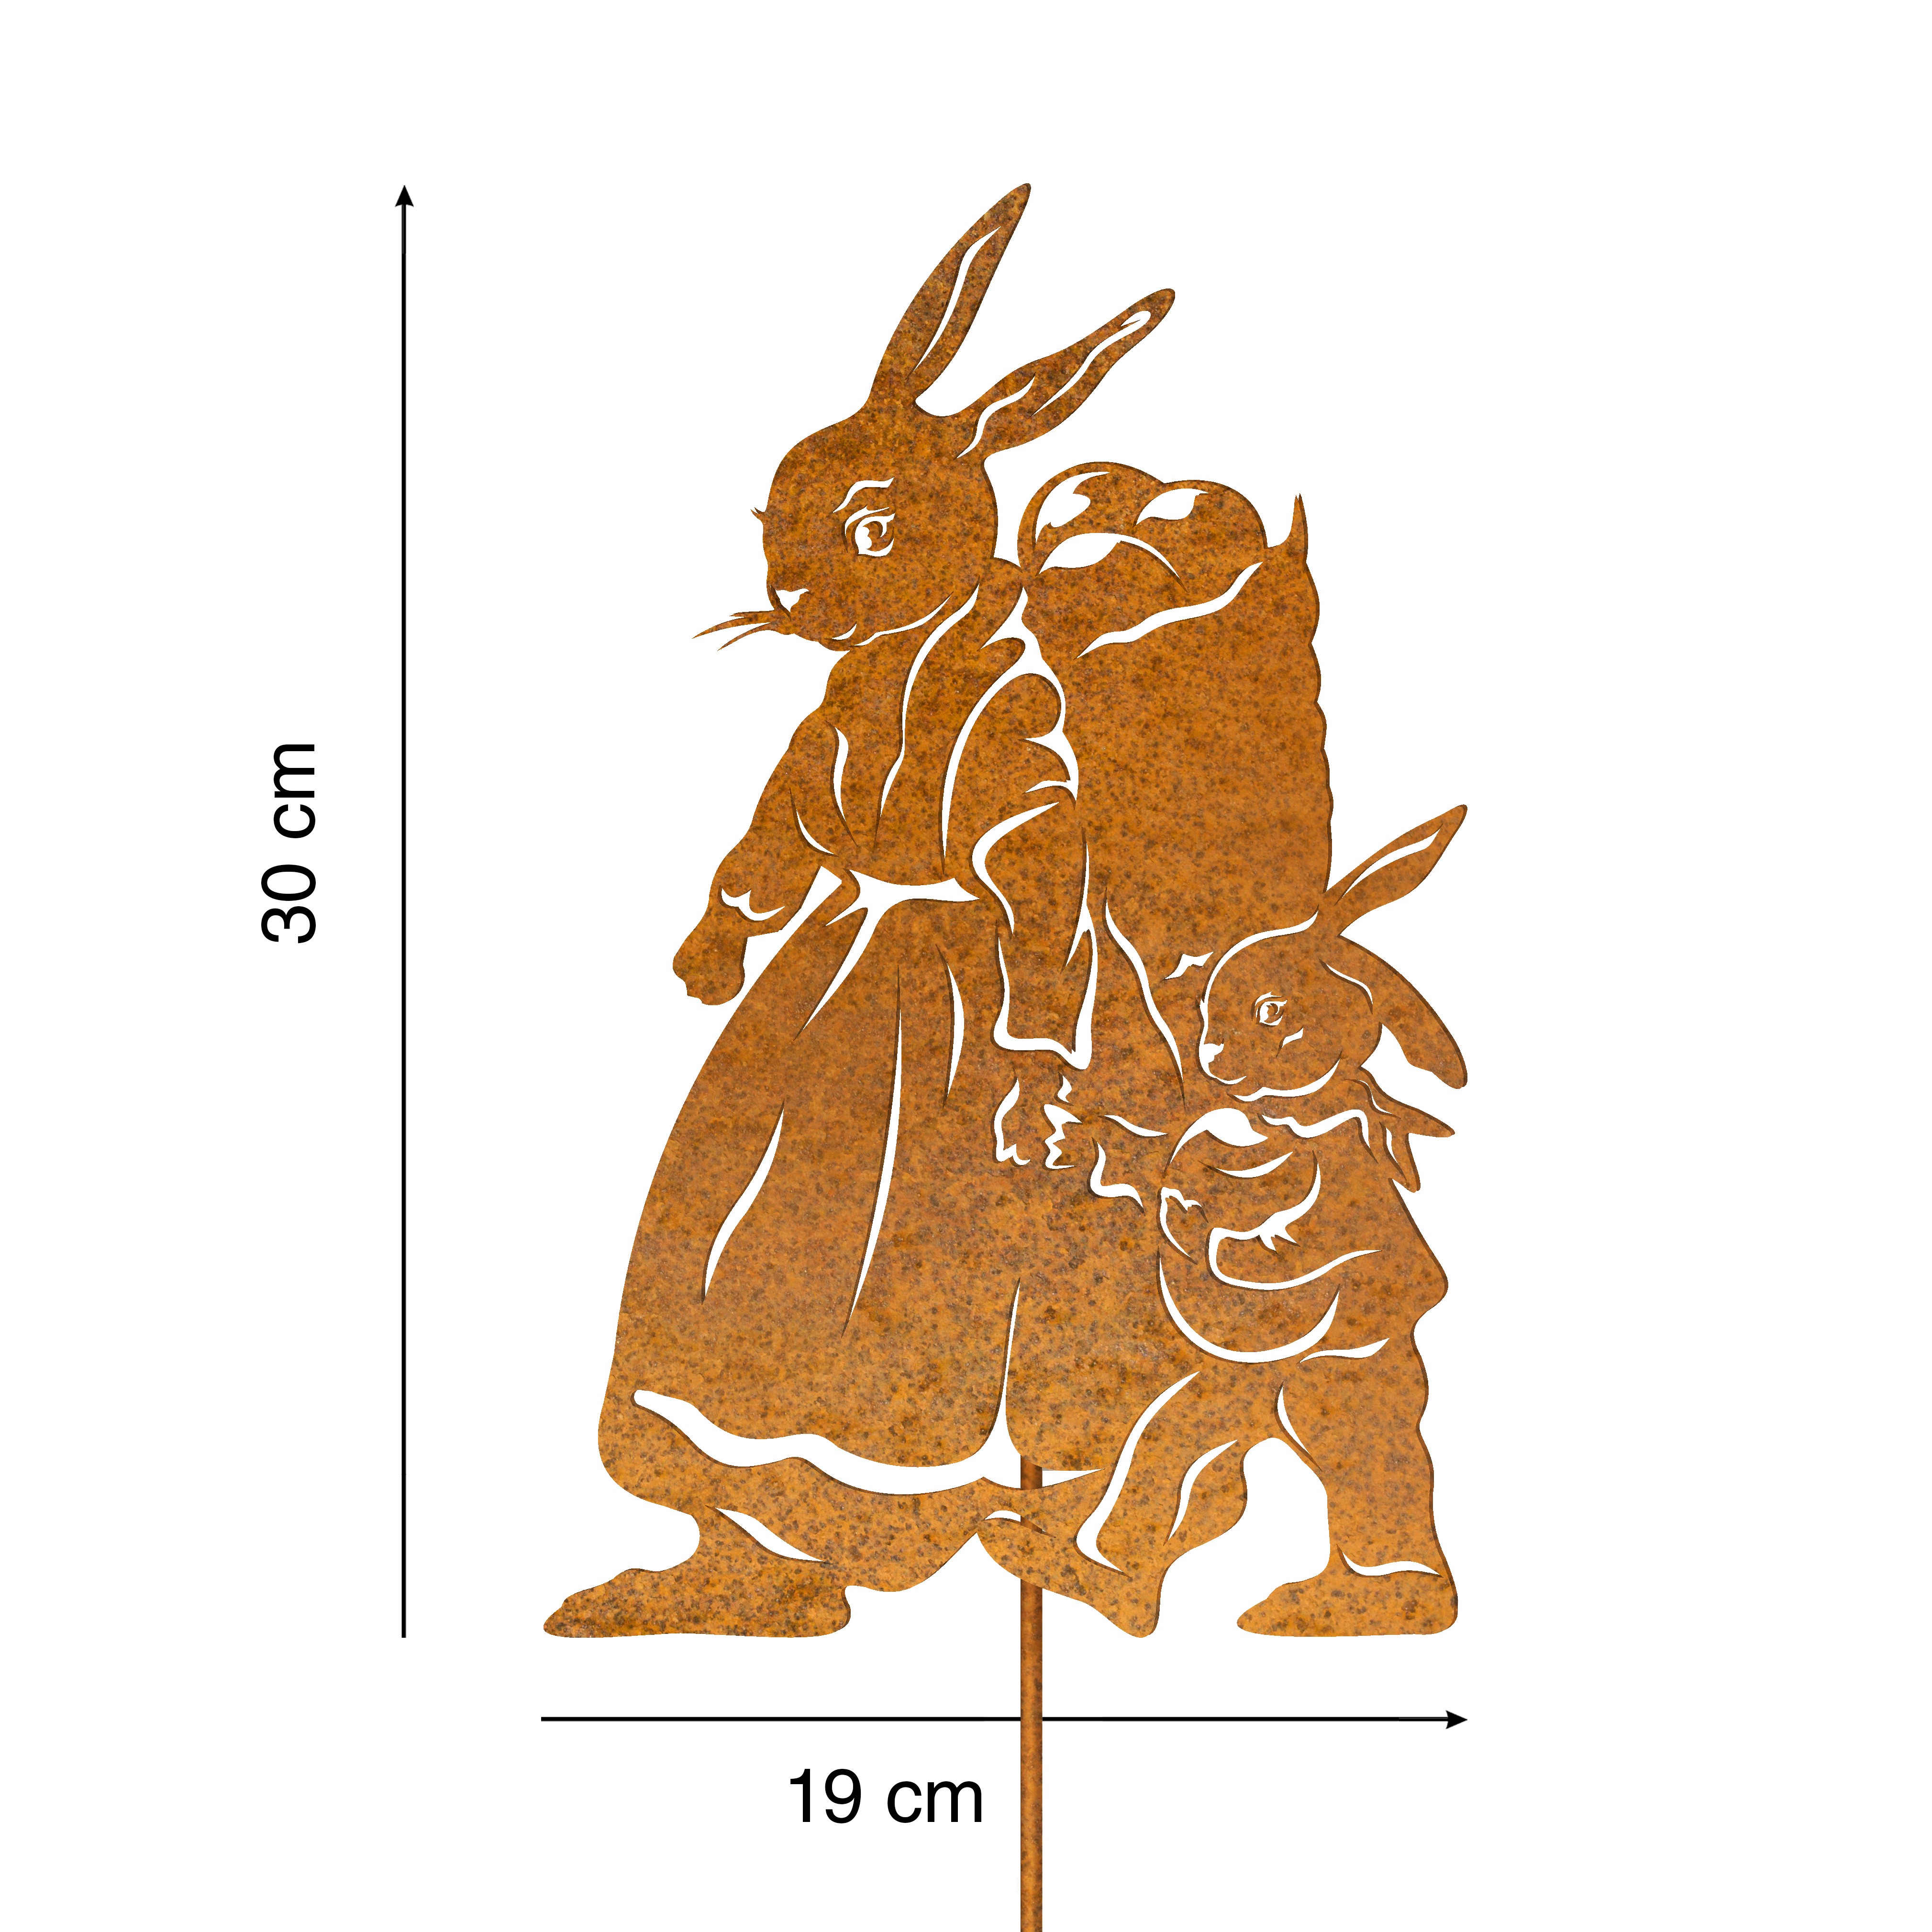 Rostfigur Osterhäsin mit Hasenkind 30 cm mit Spieß